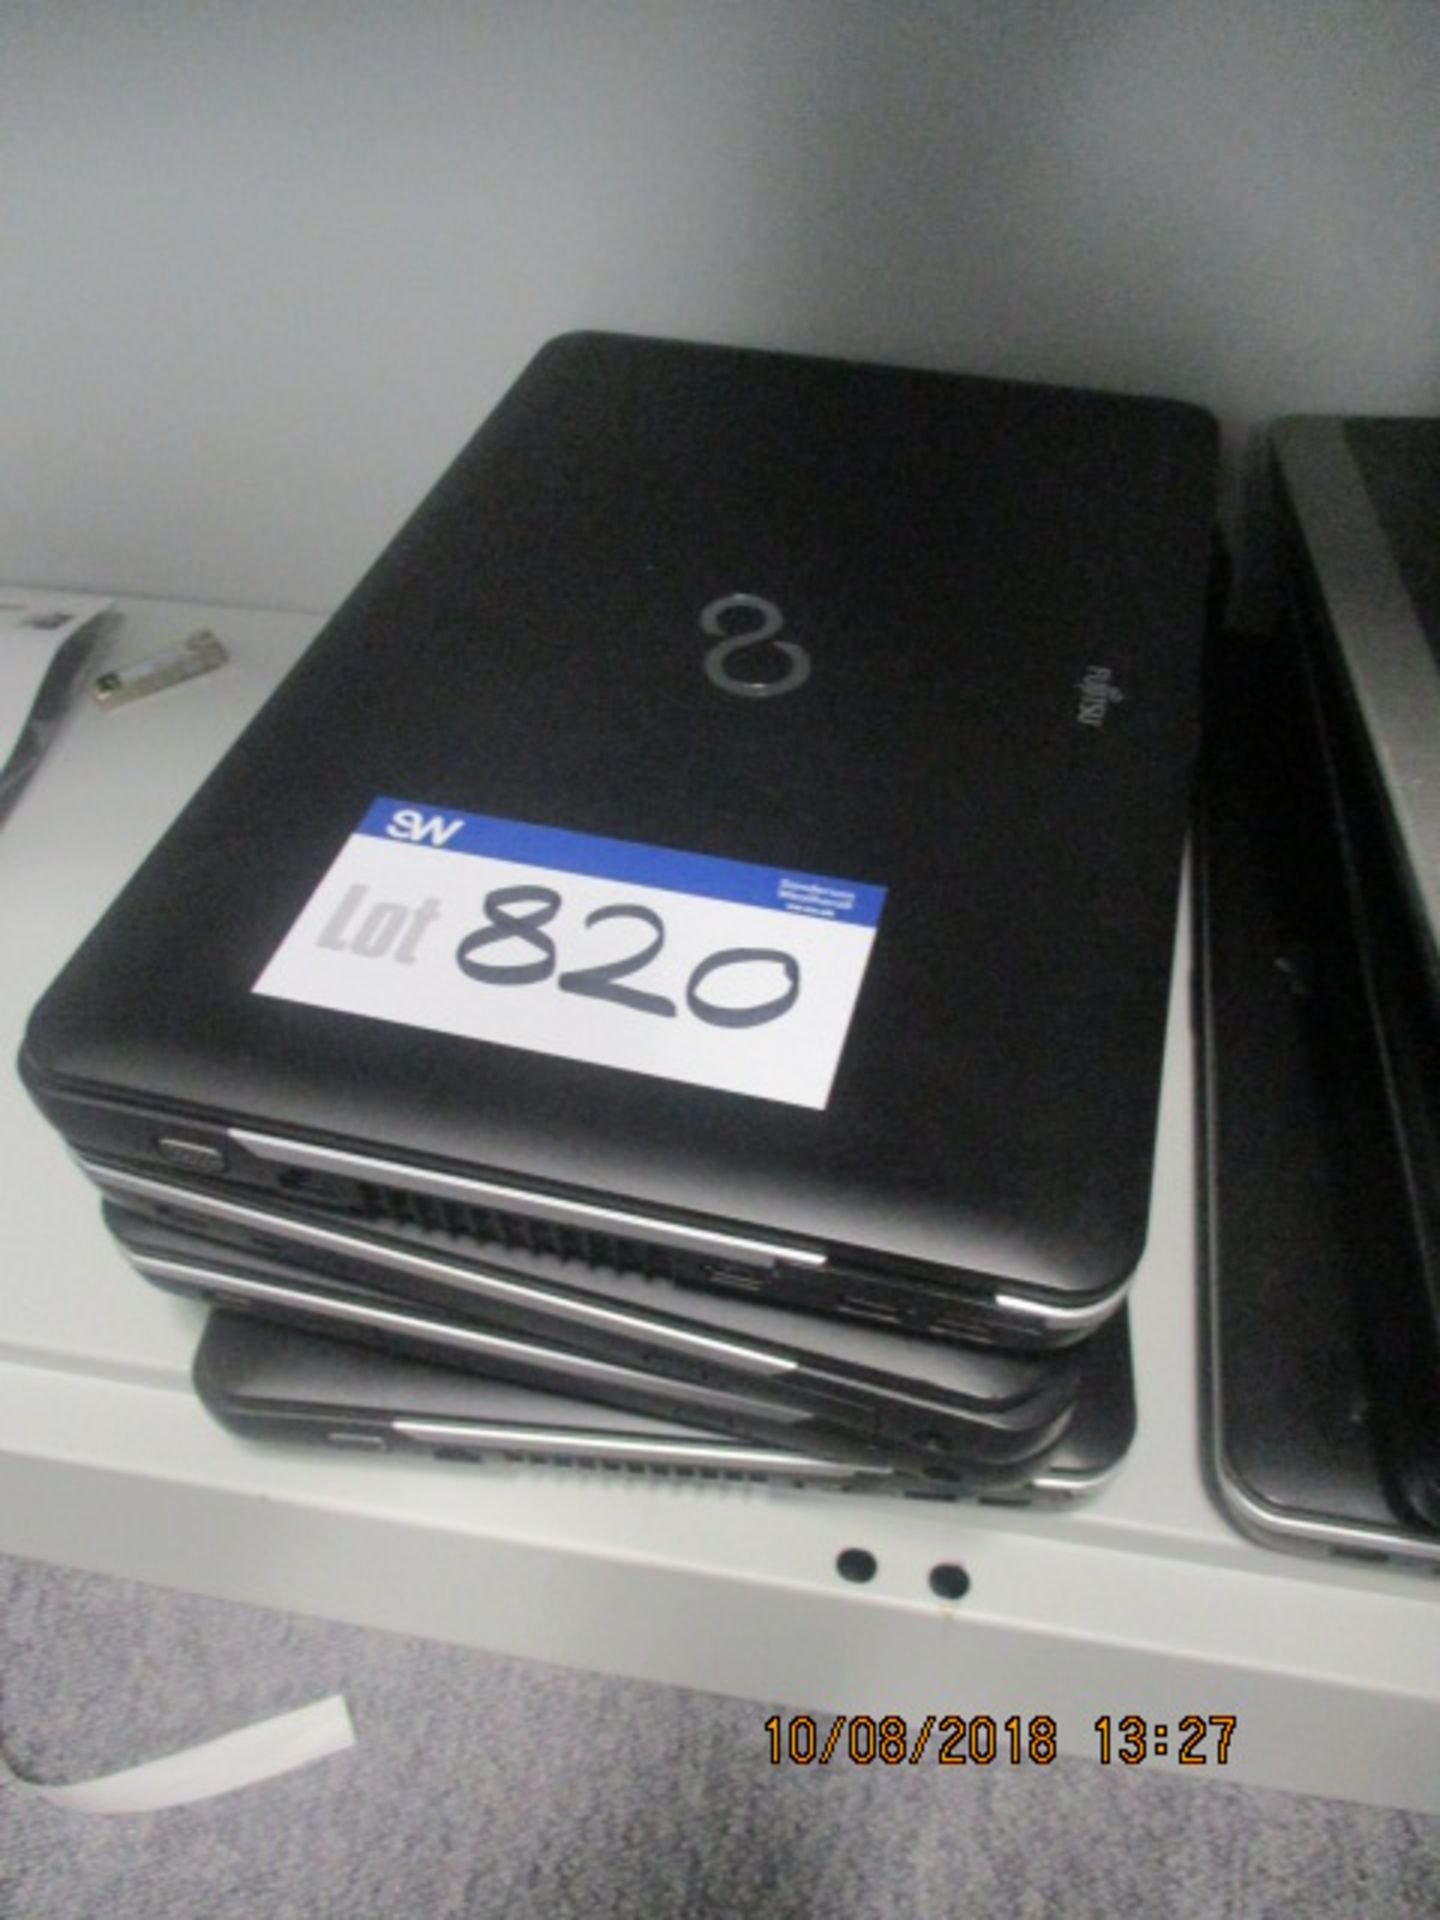 4 x Fujitsu Laptops